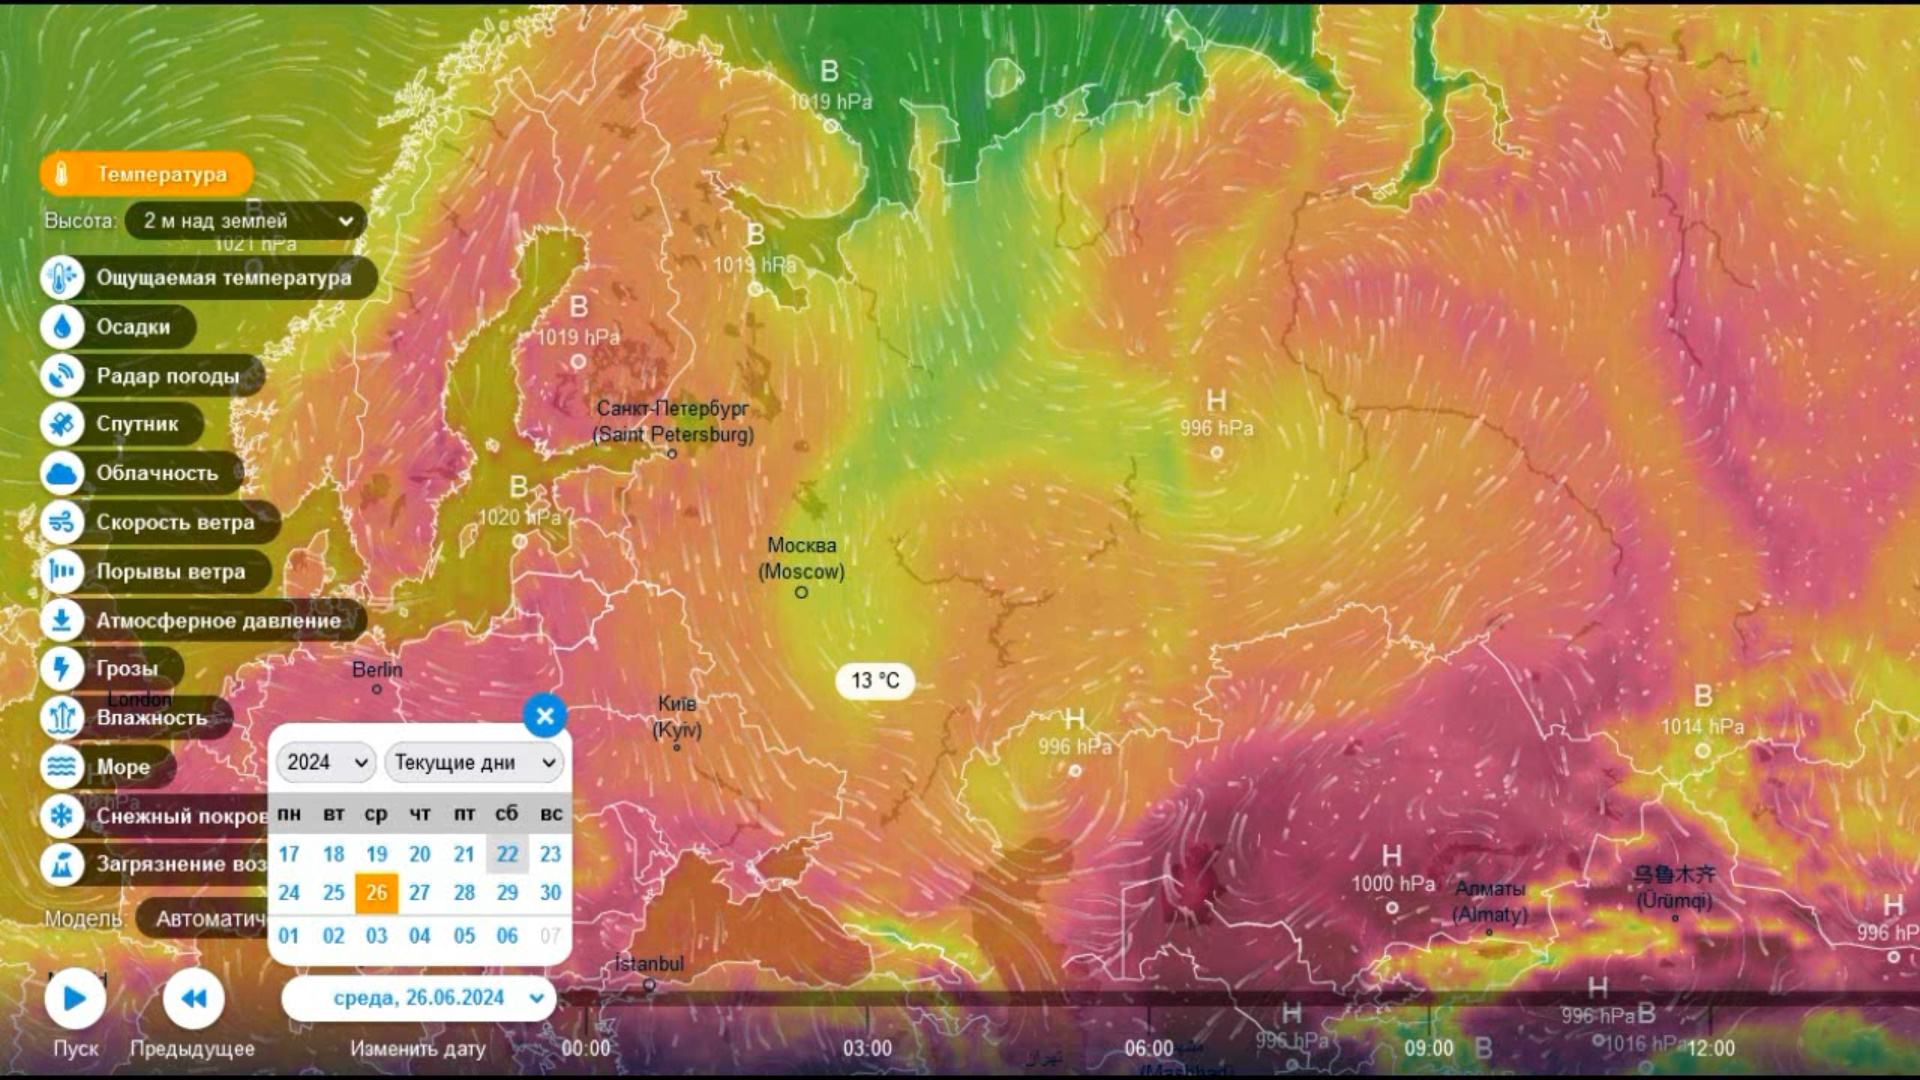 Осенний холод на ЕТР и жара в Западной Сибири и в Скандинавии 26 июня. Прогноз погоды